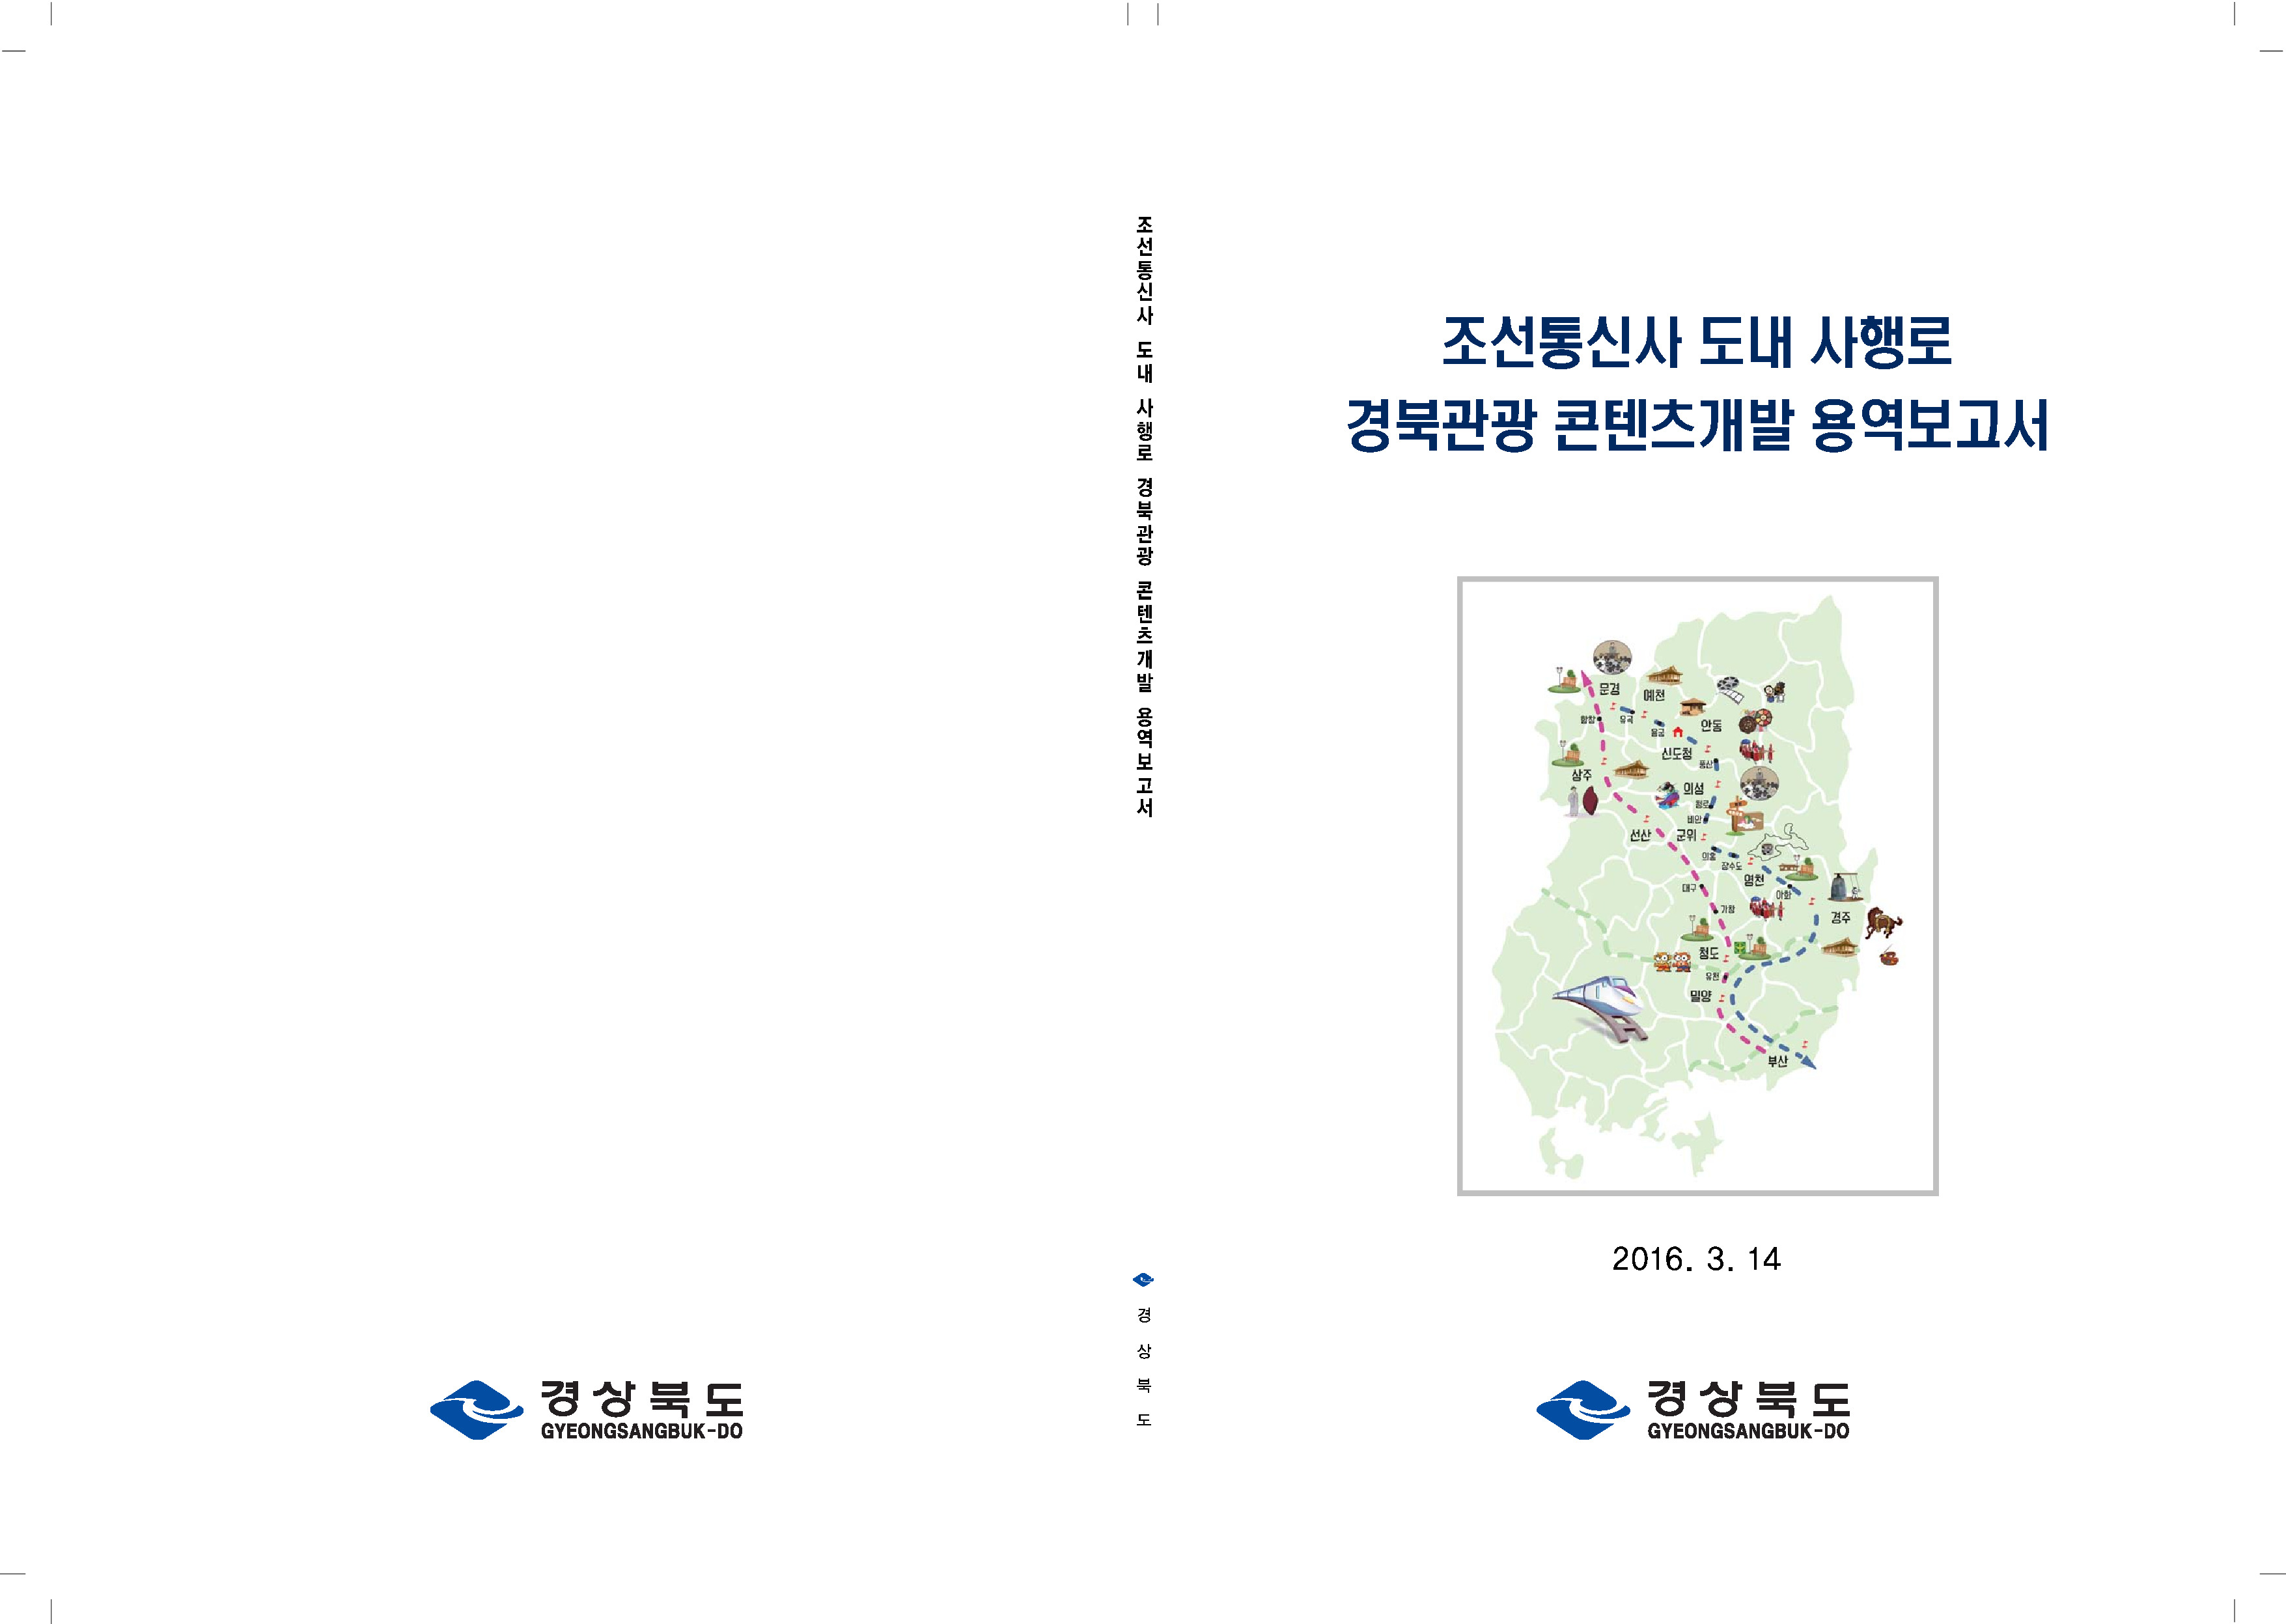 조선통신사 (경북)도내 사행로 경북관광 콘텐츠 개발